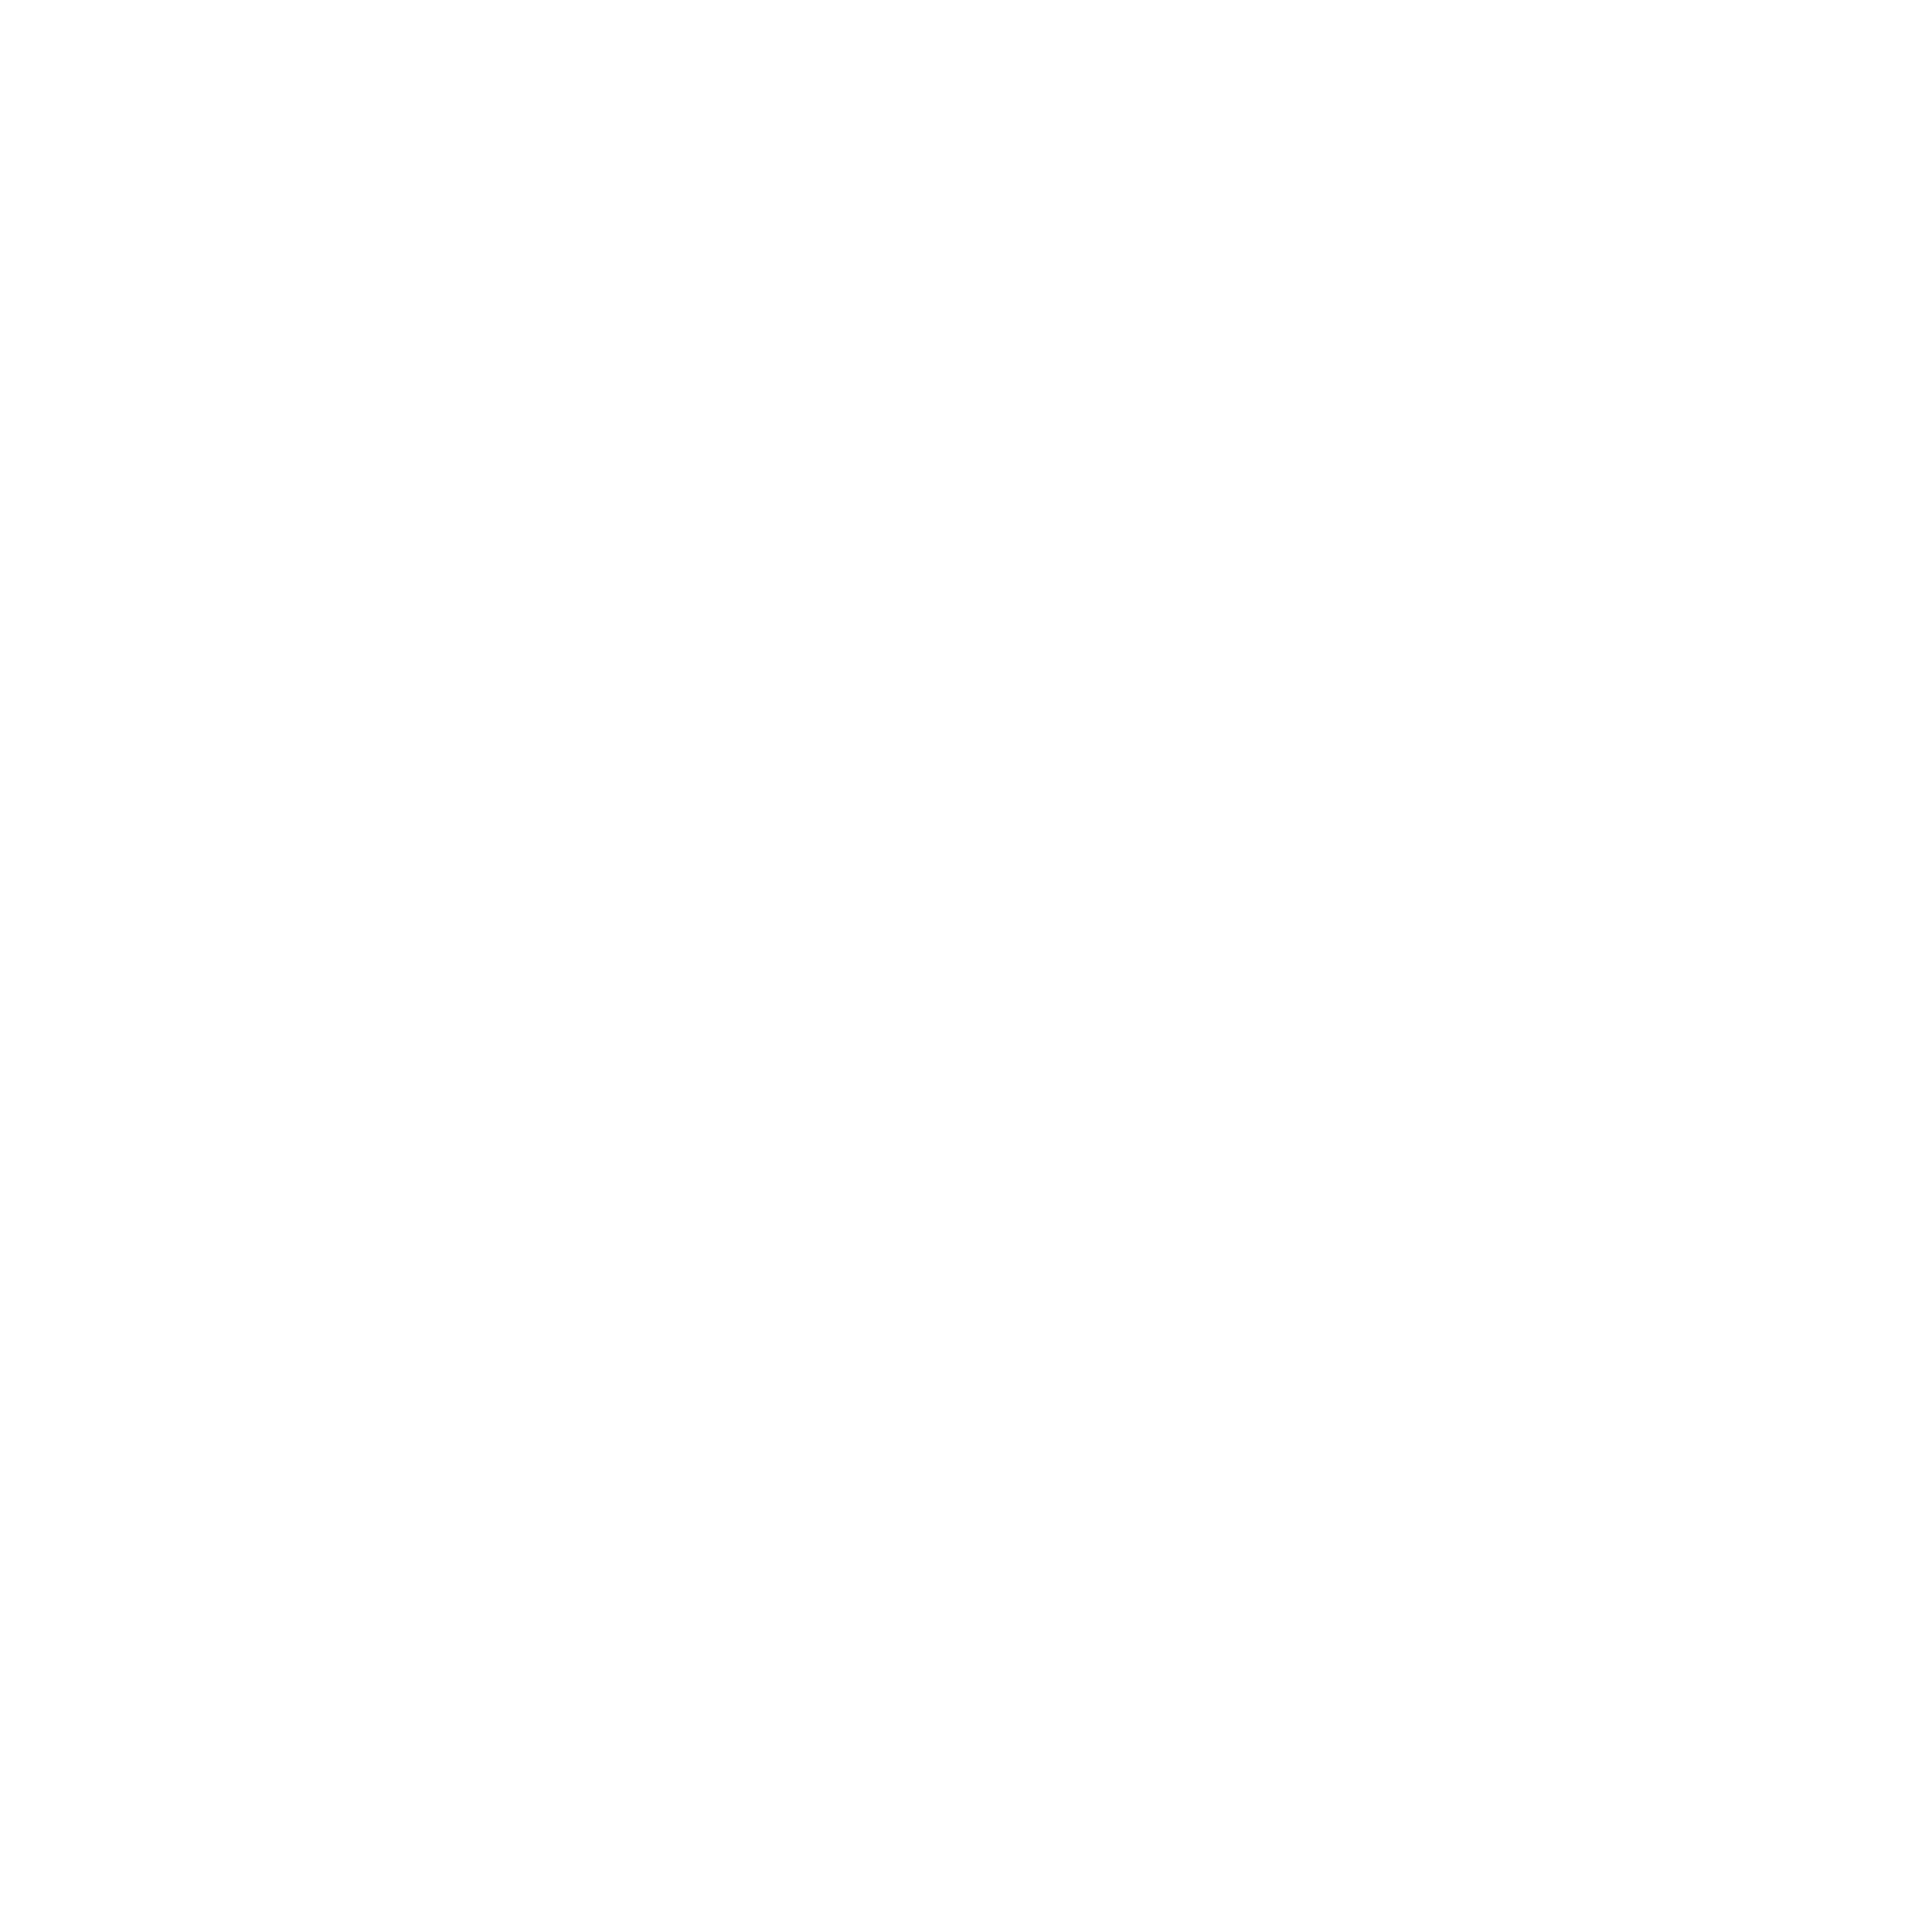 NWTN Motors